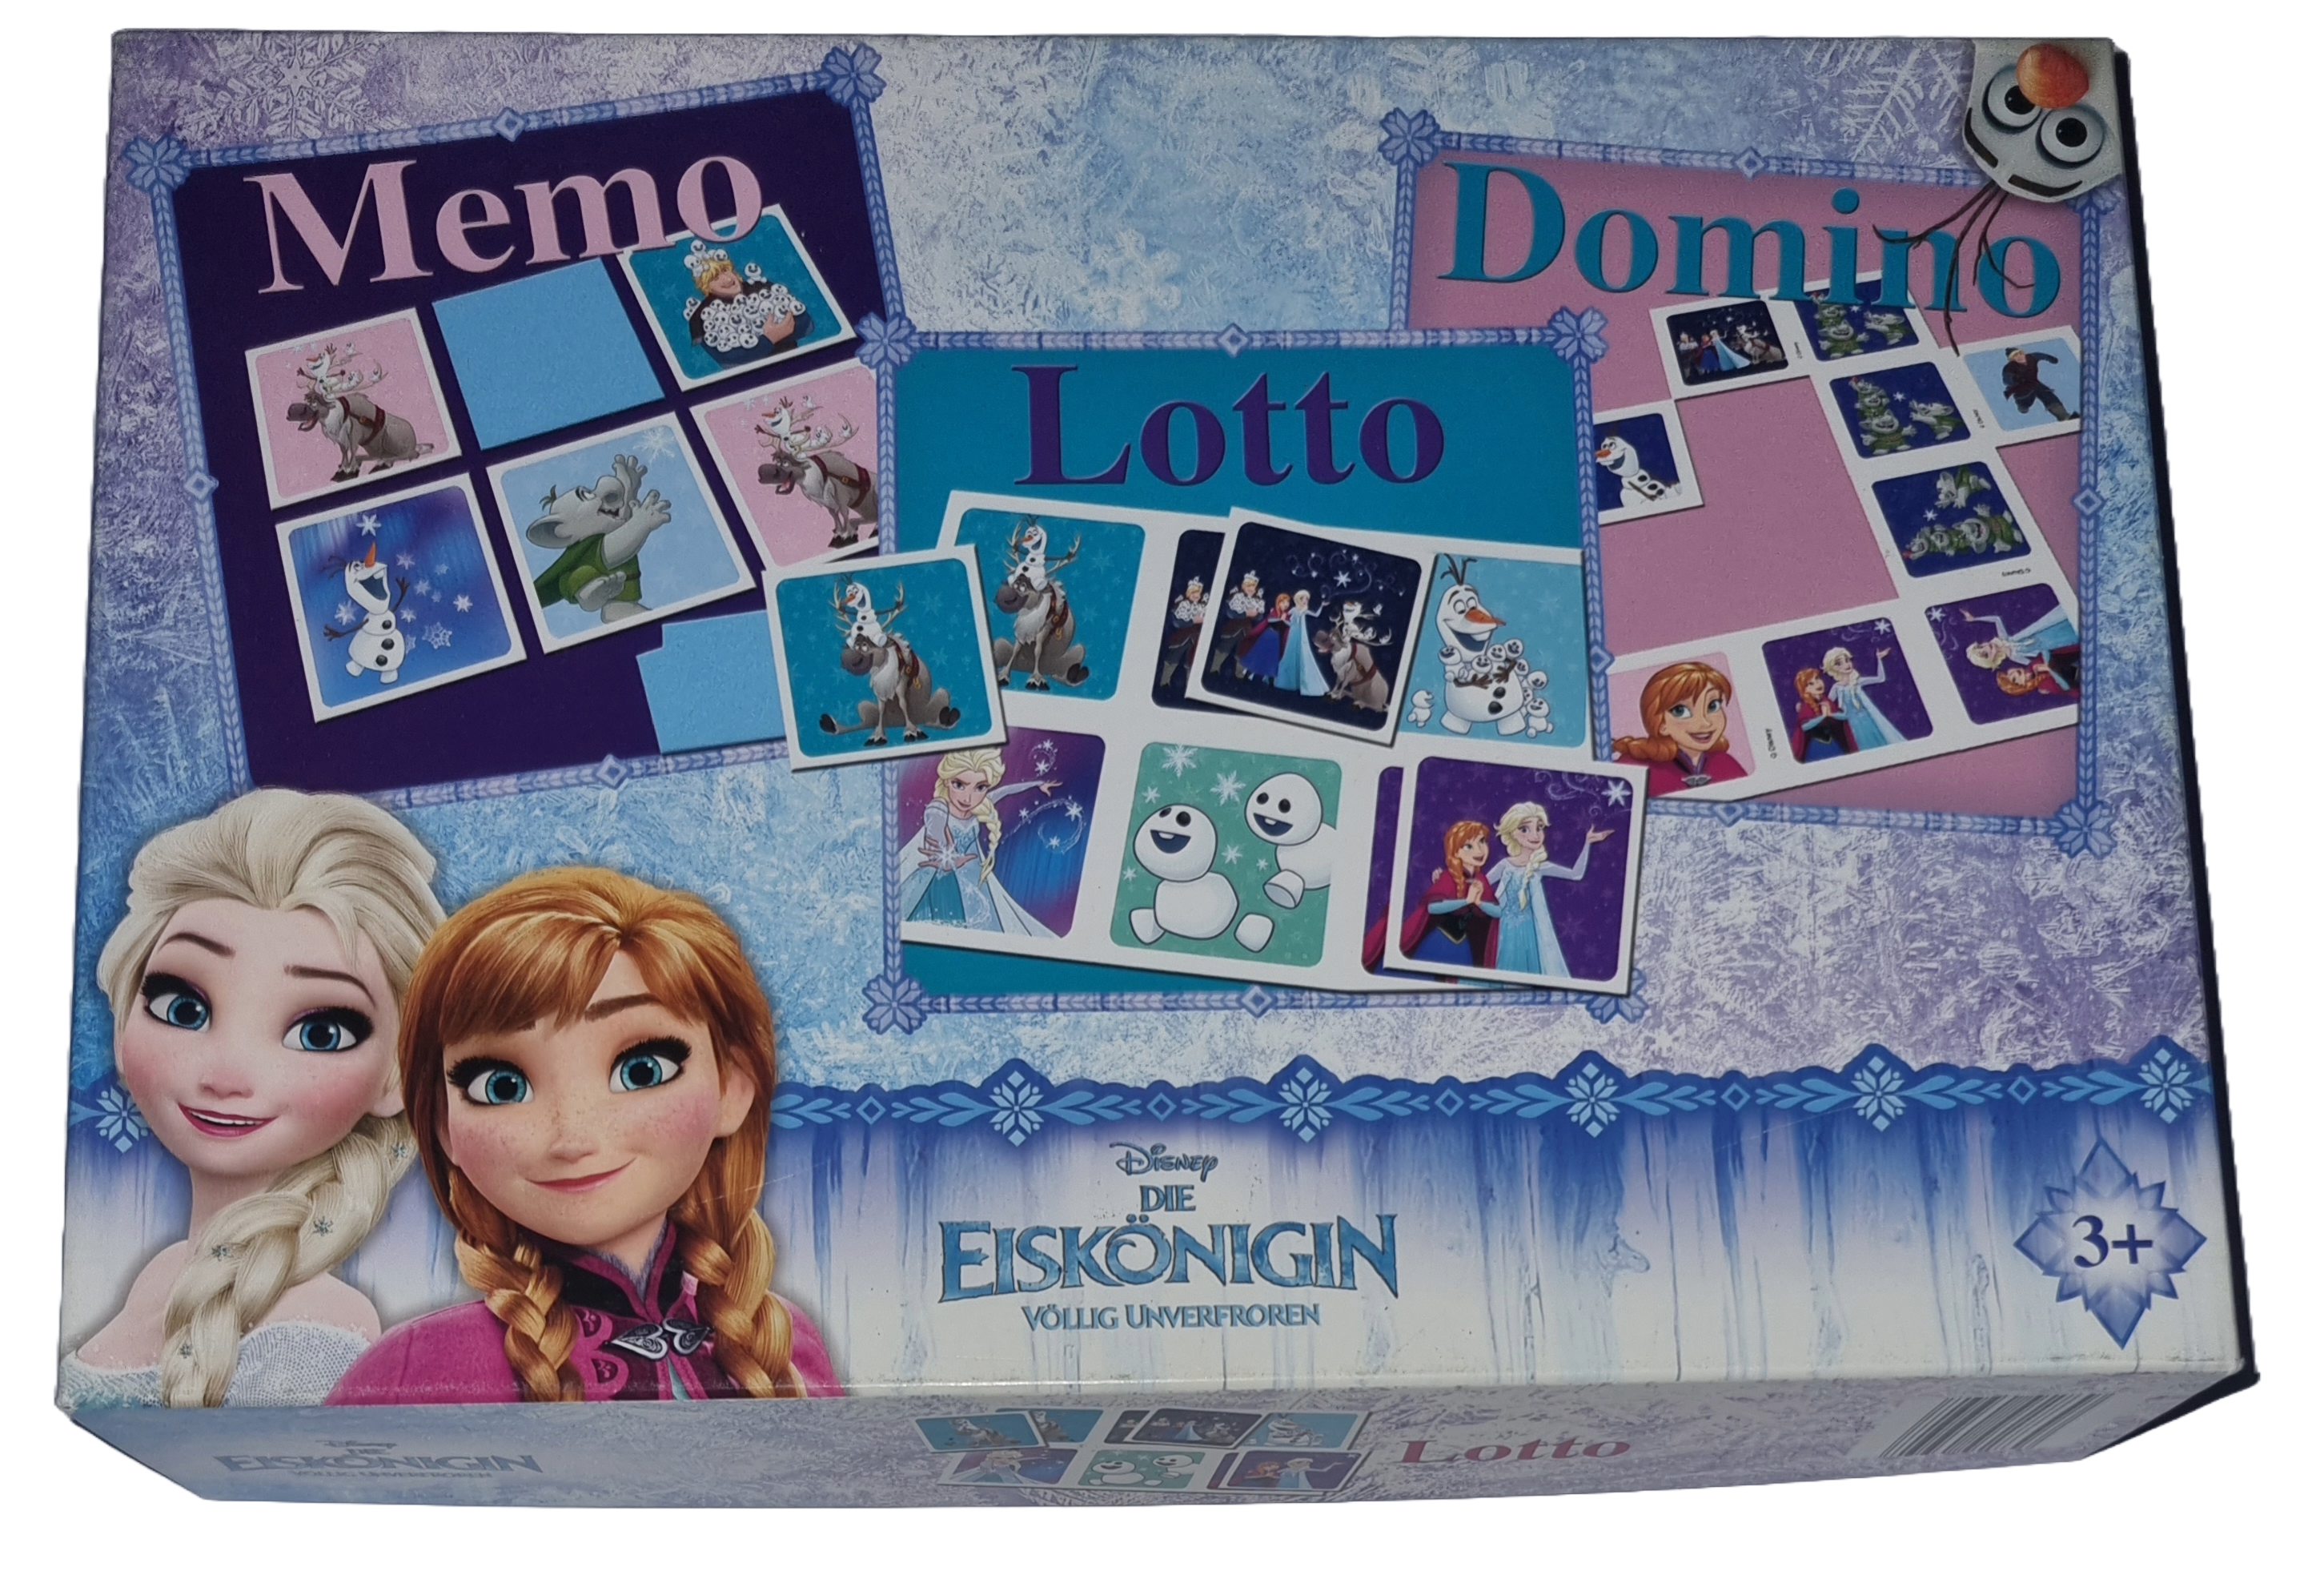 Disney Die Eiskönigin völlig unverfroren Memo Lotto Domino Spielbox 3in1